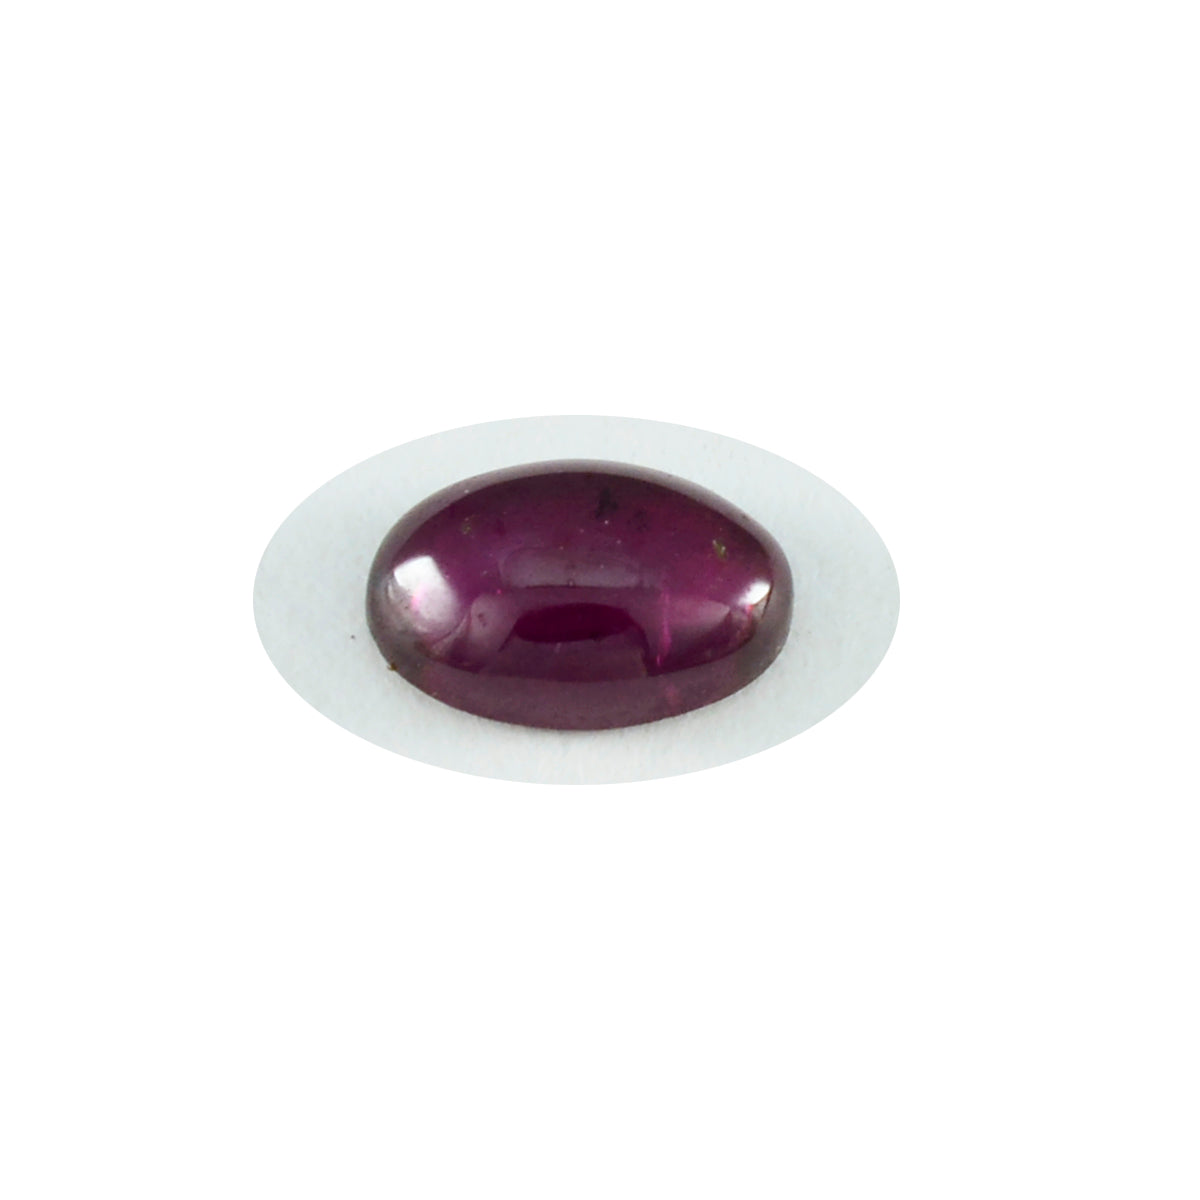 Riyogems 1PC rode granaat cabochon 7x9 mm ovale vorm, mooie kwaliteit losse edelsteen